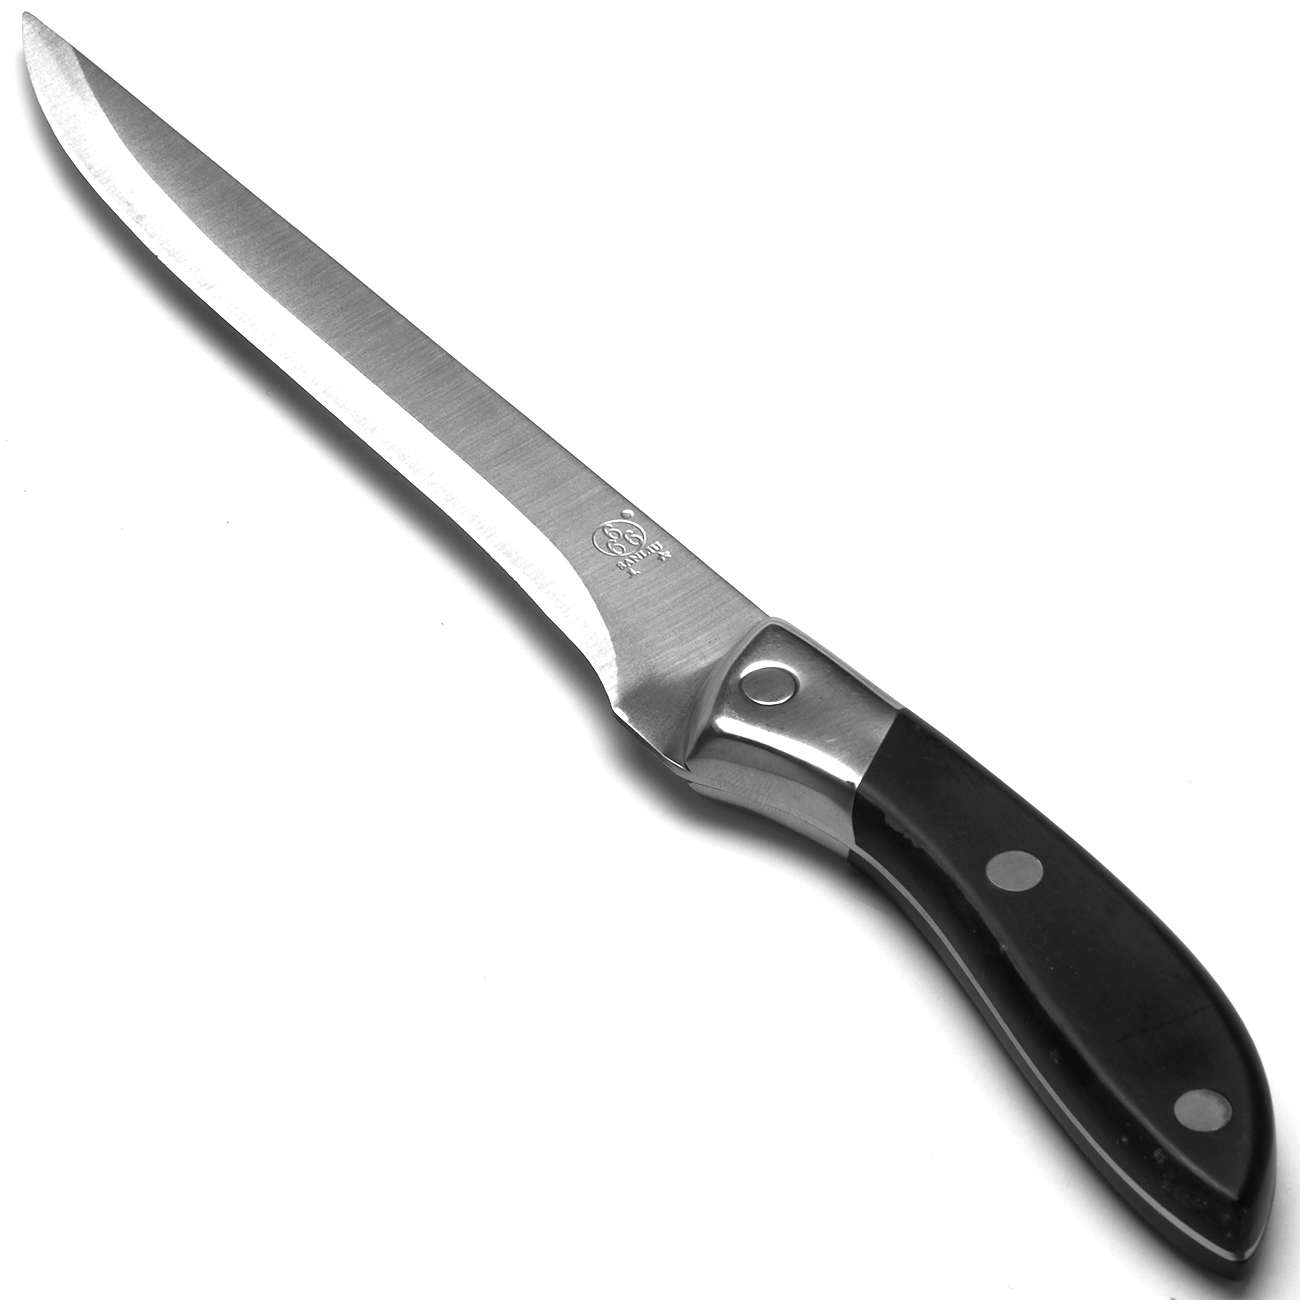 фото Нож универсальный, цвет: серебристый, черный, длина лезвия 18 см Sanliu 666